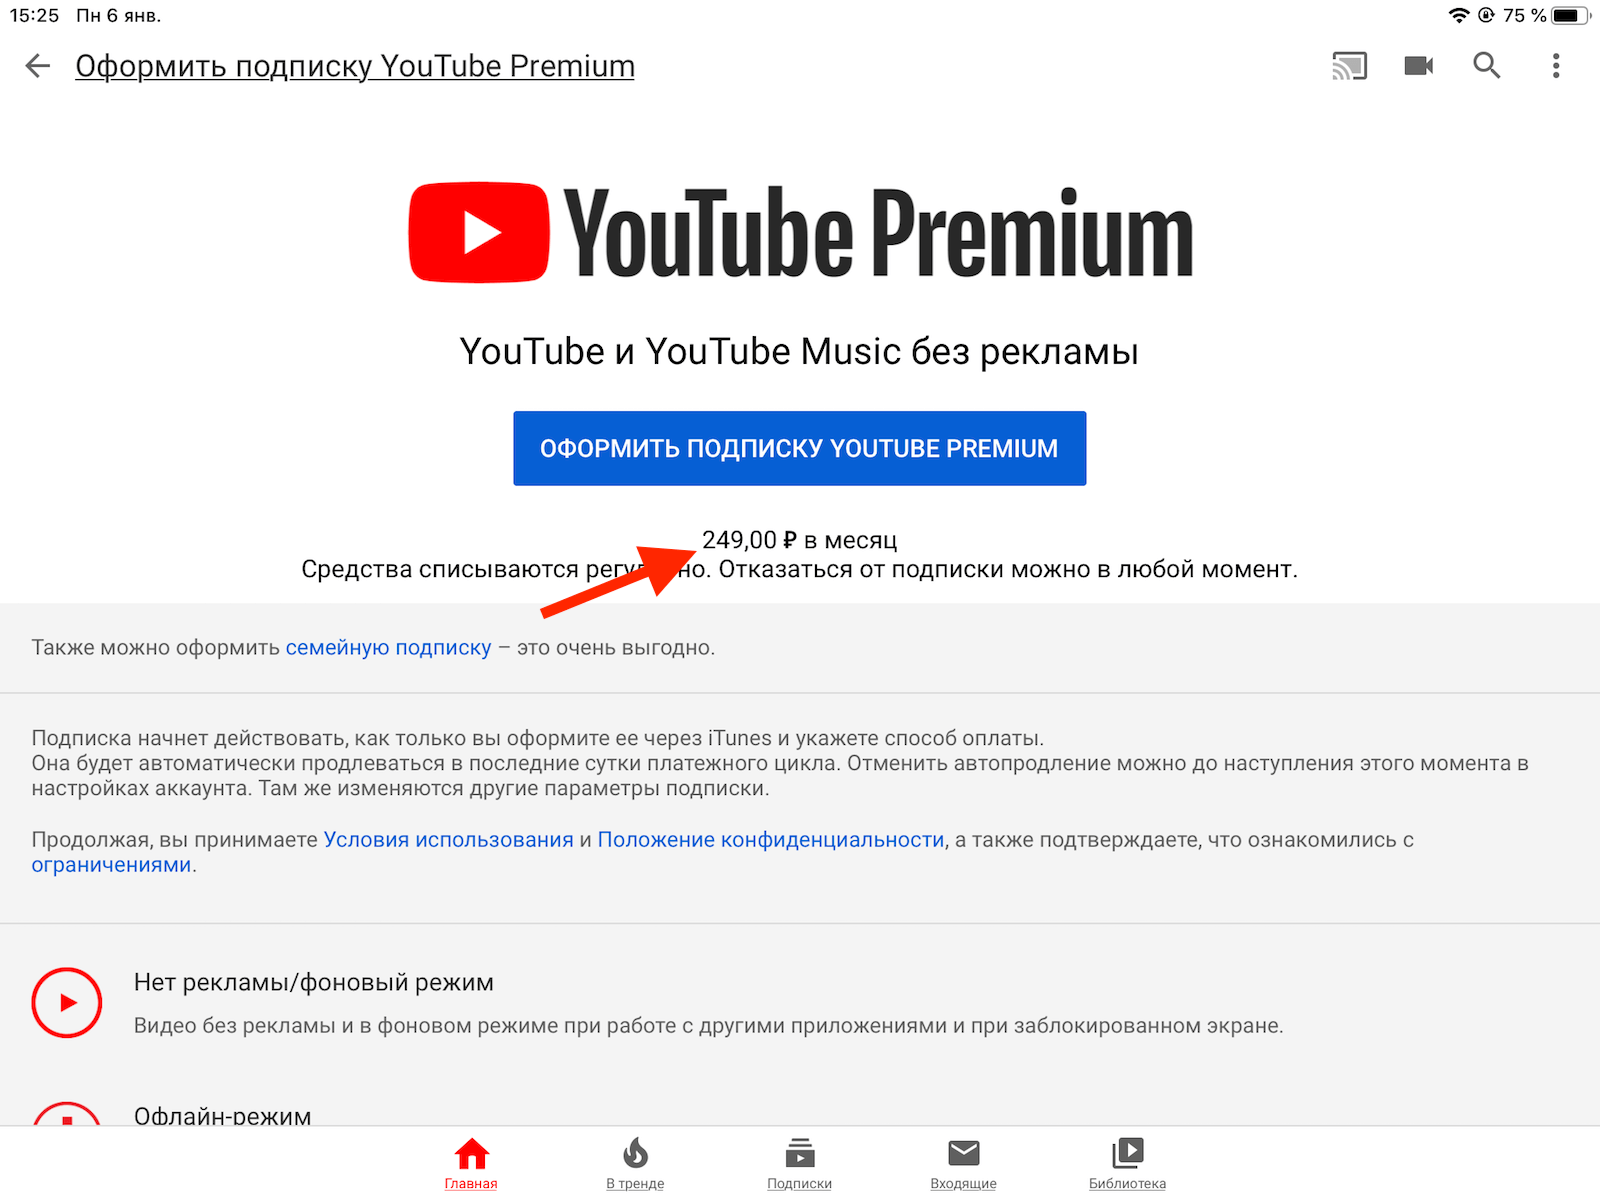 Ютуб подписки сколько. Подписка youtube Premium. Подписка оформлена ютуб. Как оформить ютуб премиум. Ютуб премиум оформлена.